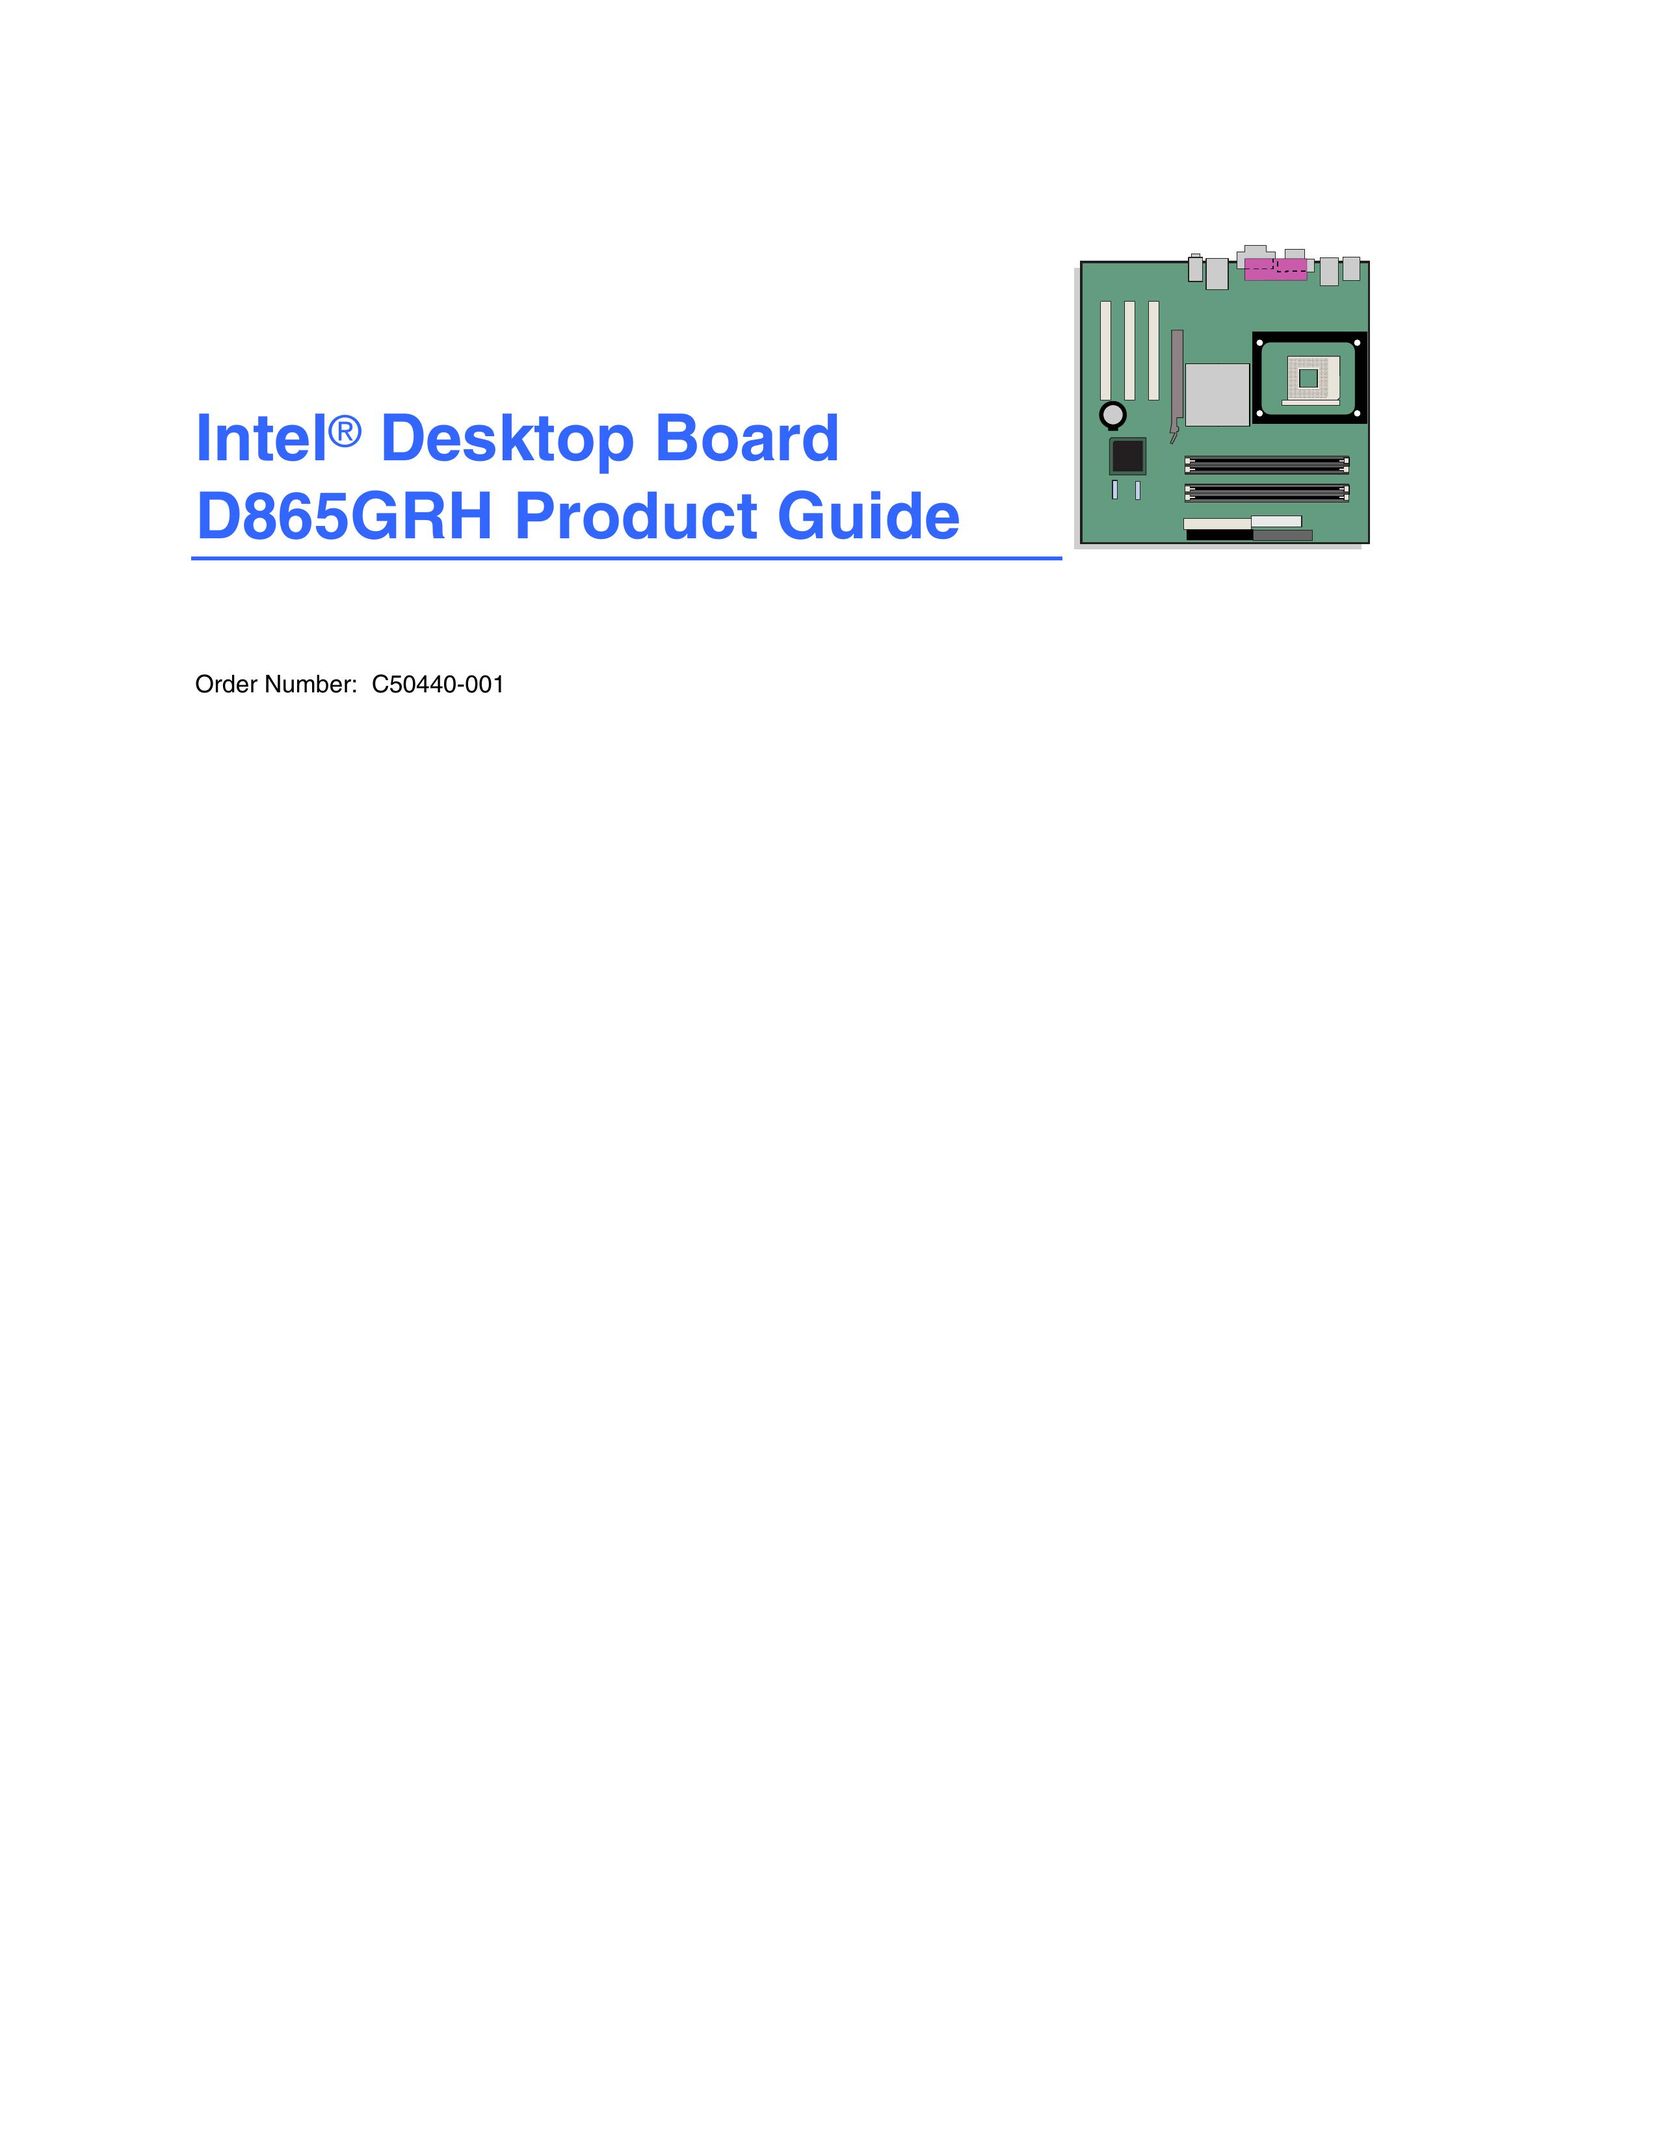 Intel D865GRH Telephone User Manual